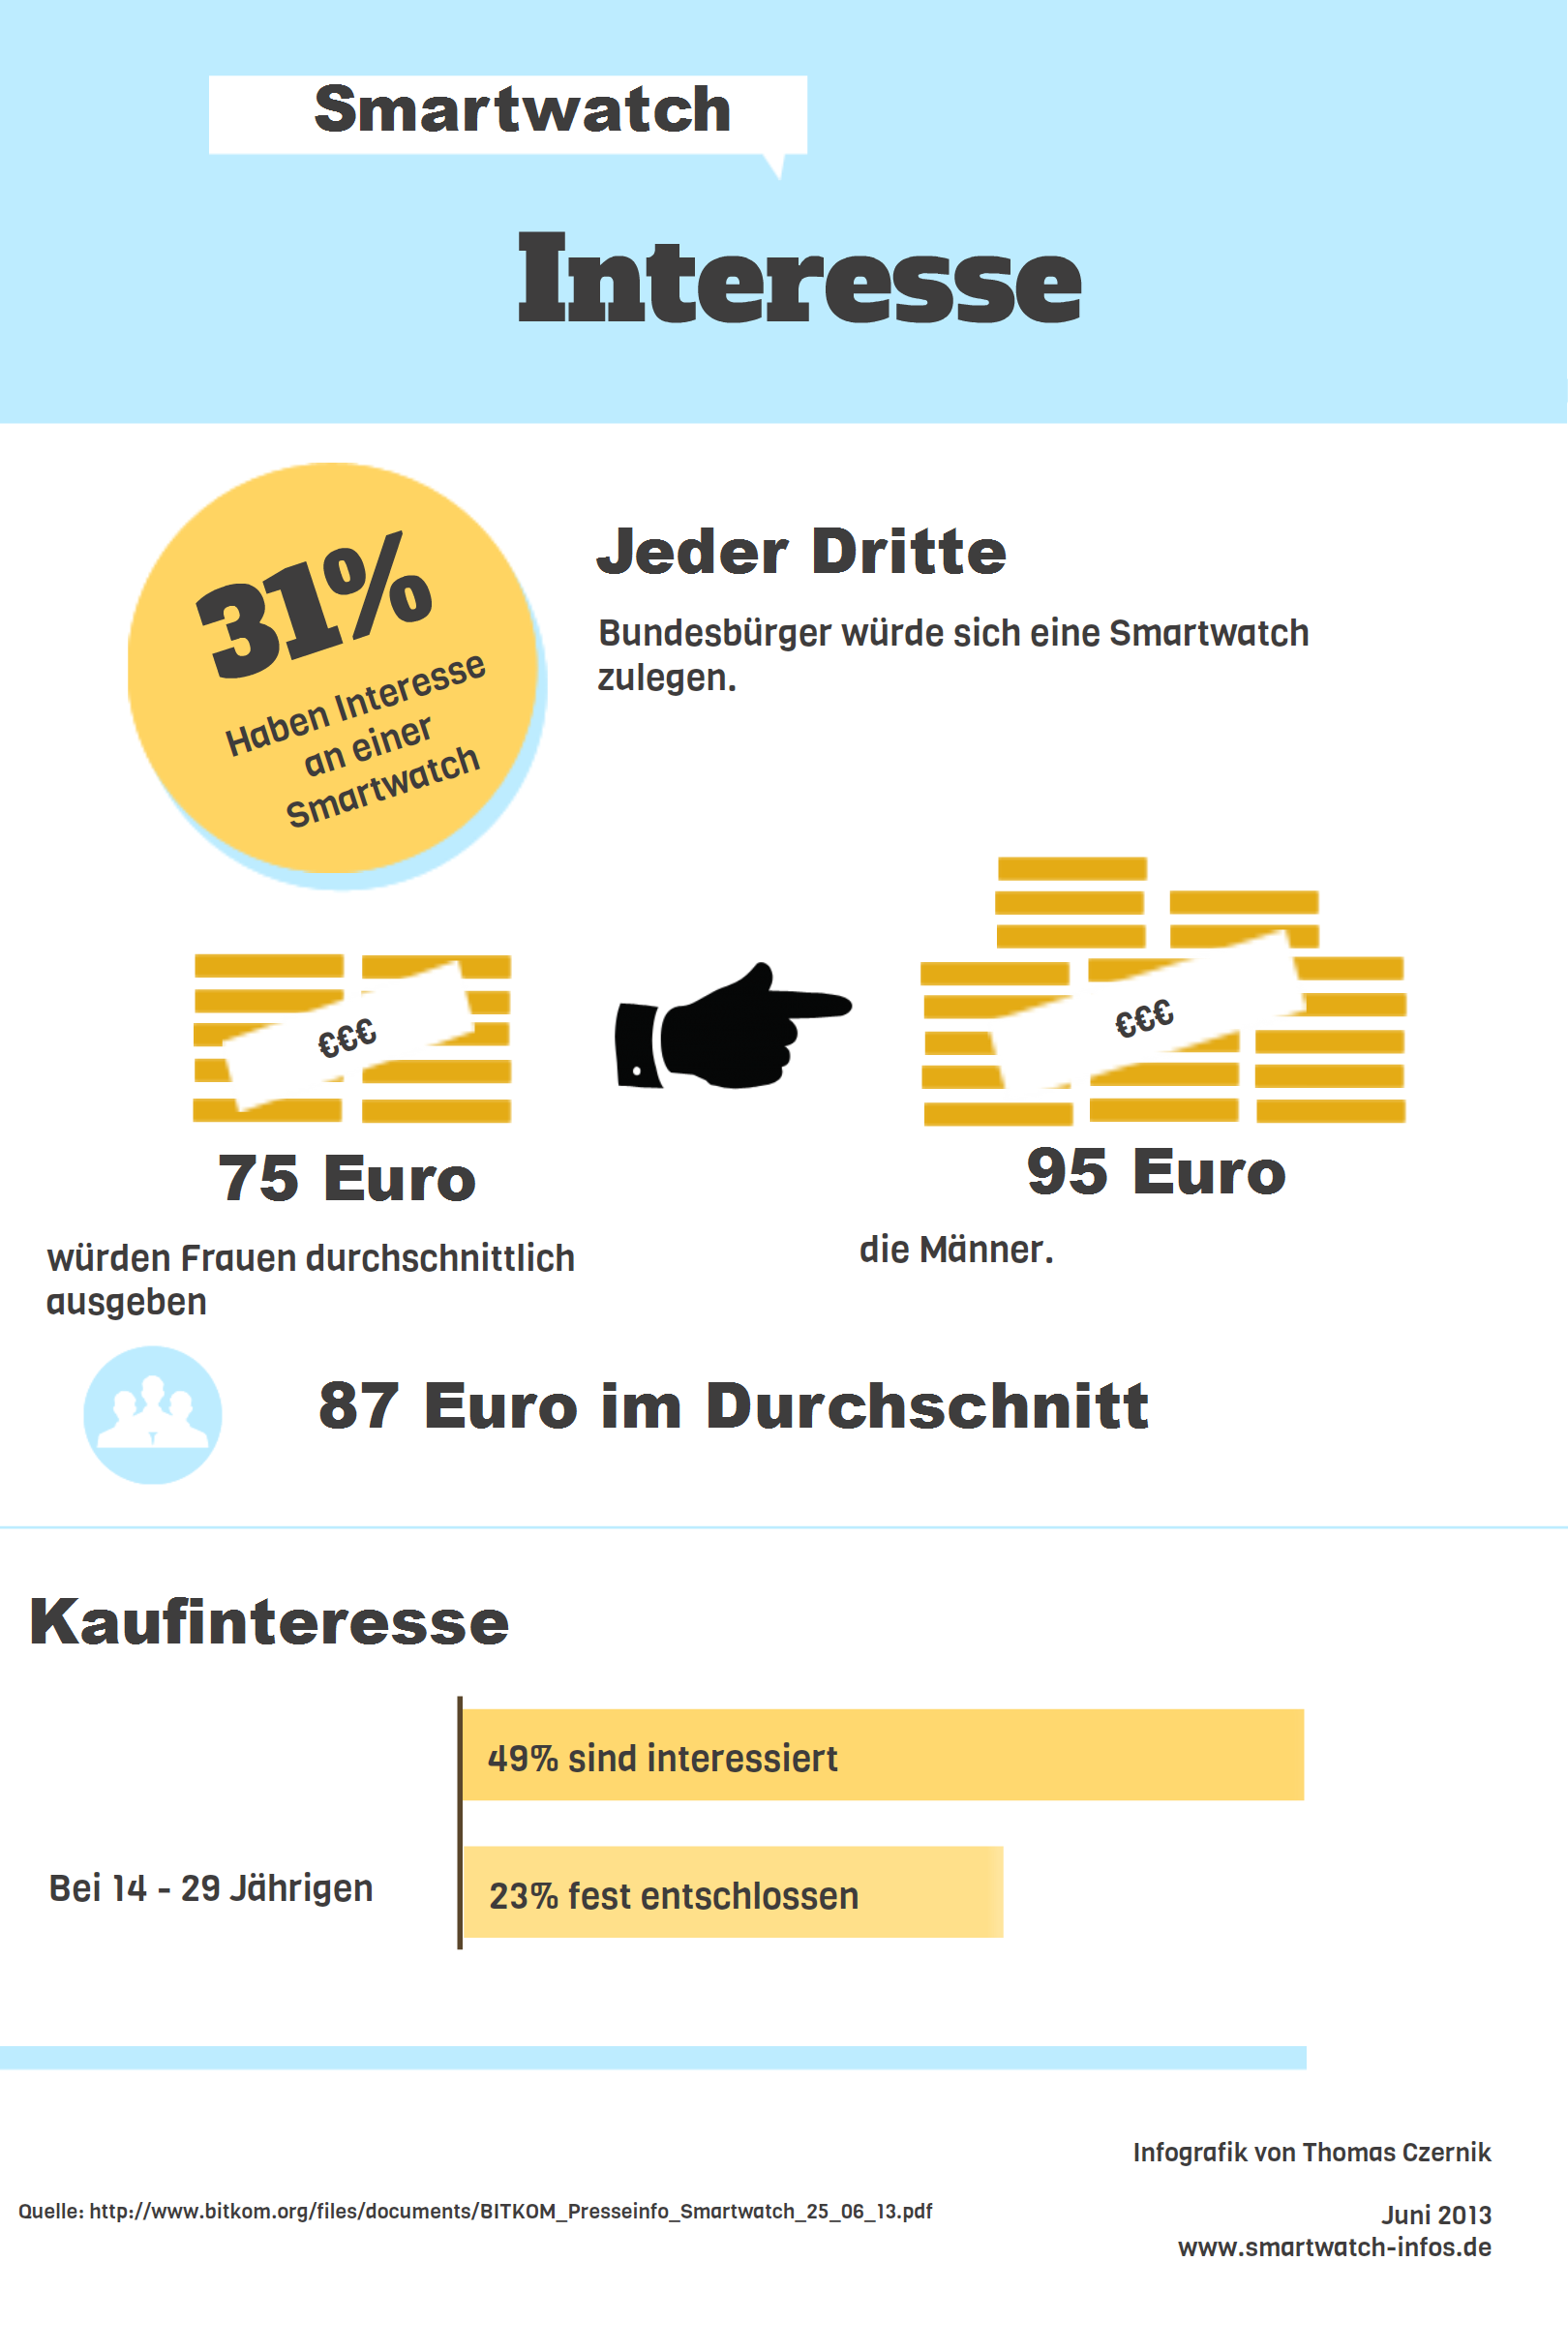 Infografik zum Smartwatch Kaufinteresse in Deutschland